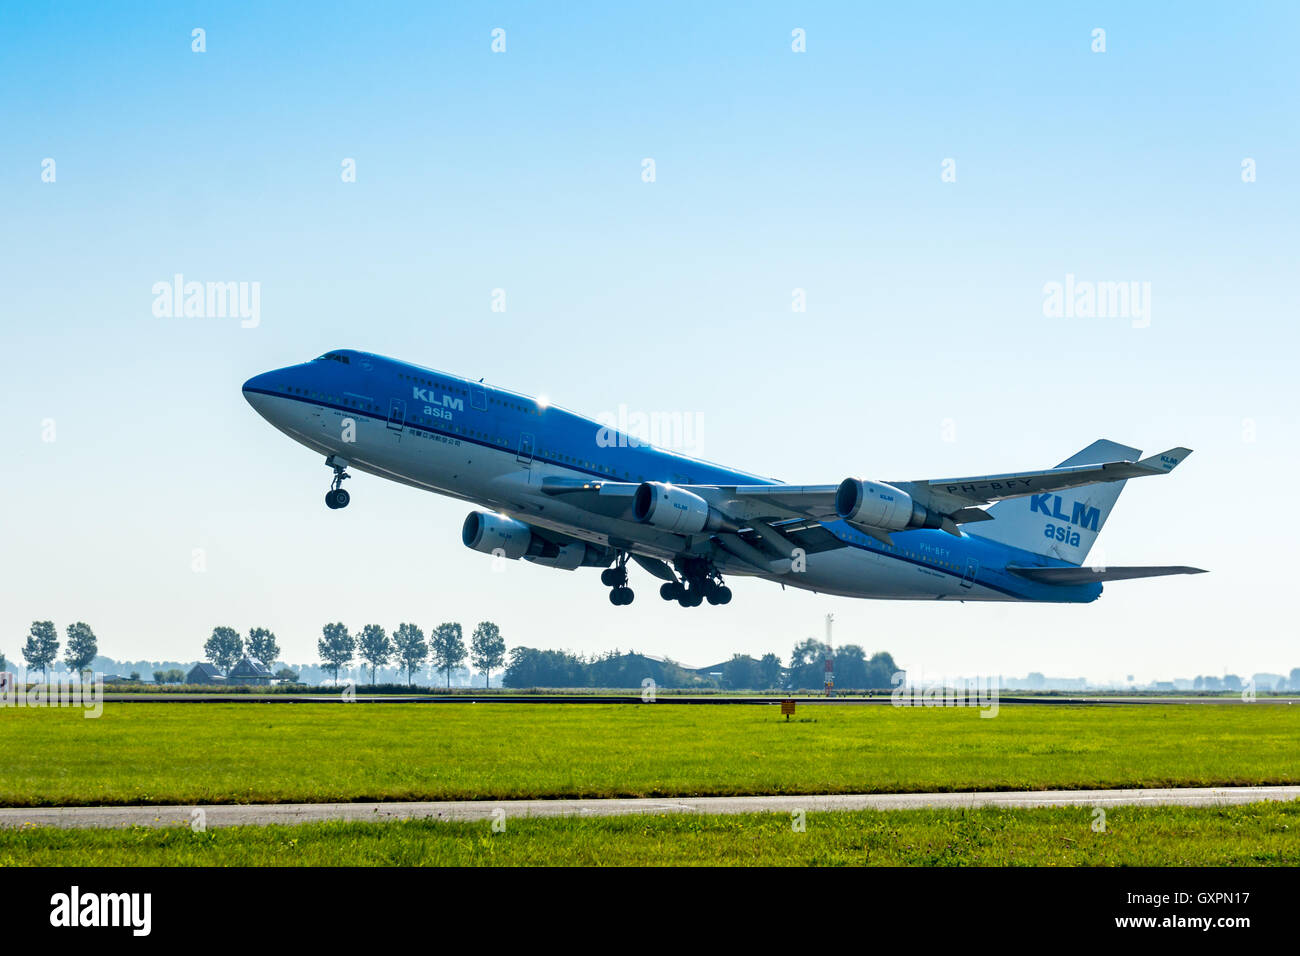 Polderbaan Flughafen Schiphol, Niederlande - 20.September 2016: KLM Air France Boeing 747, die auf dem Amsterdamer Flughafen Schiphol Stockfoto